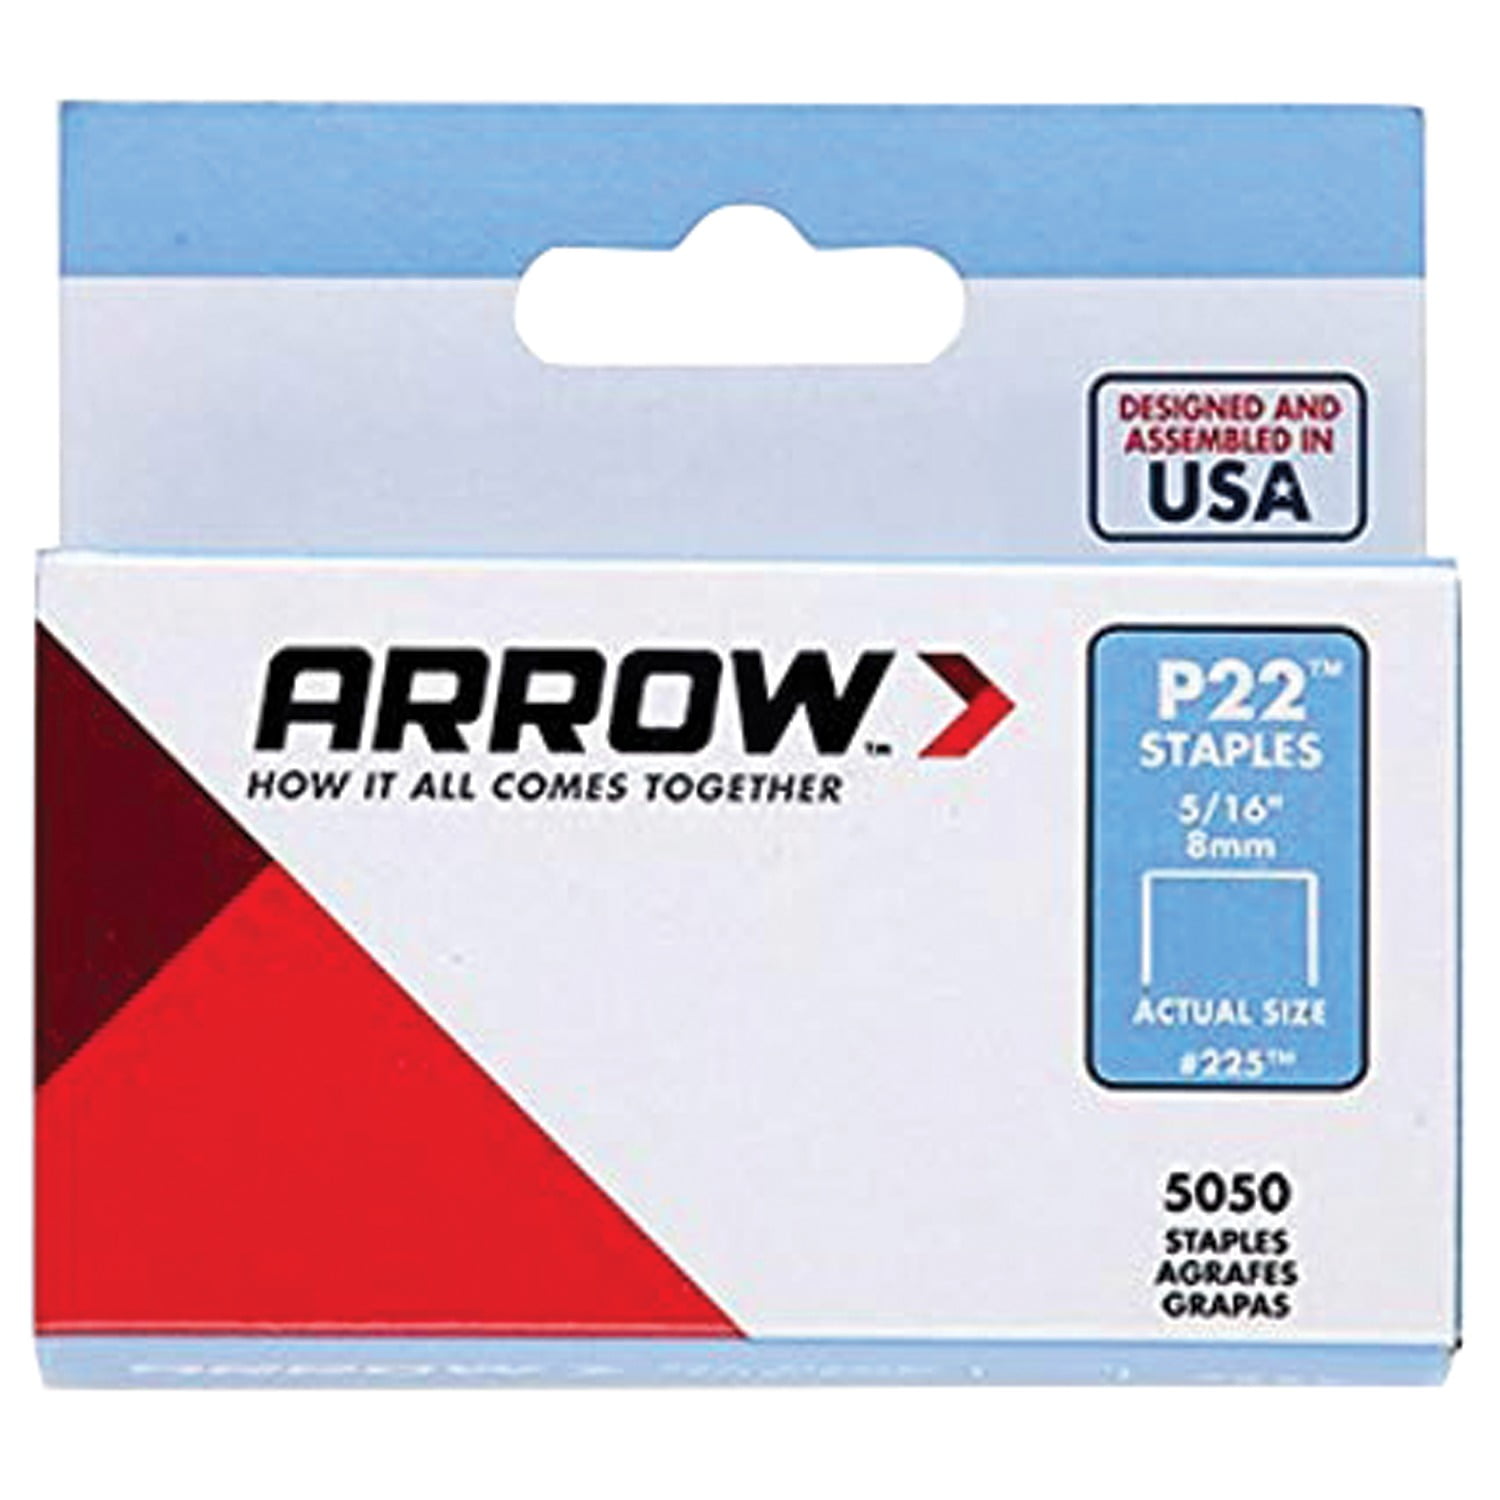 Arrow Plier Stapler 1/4 3/8" Staples 